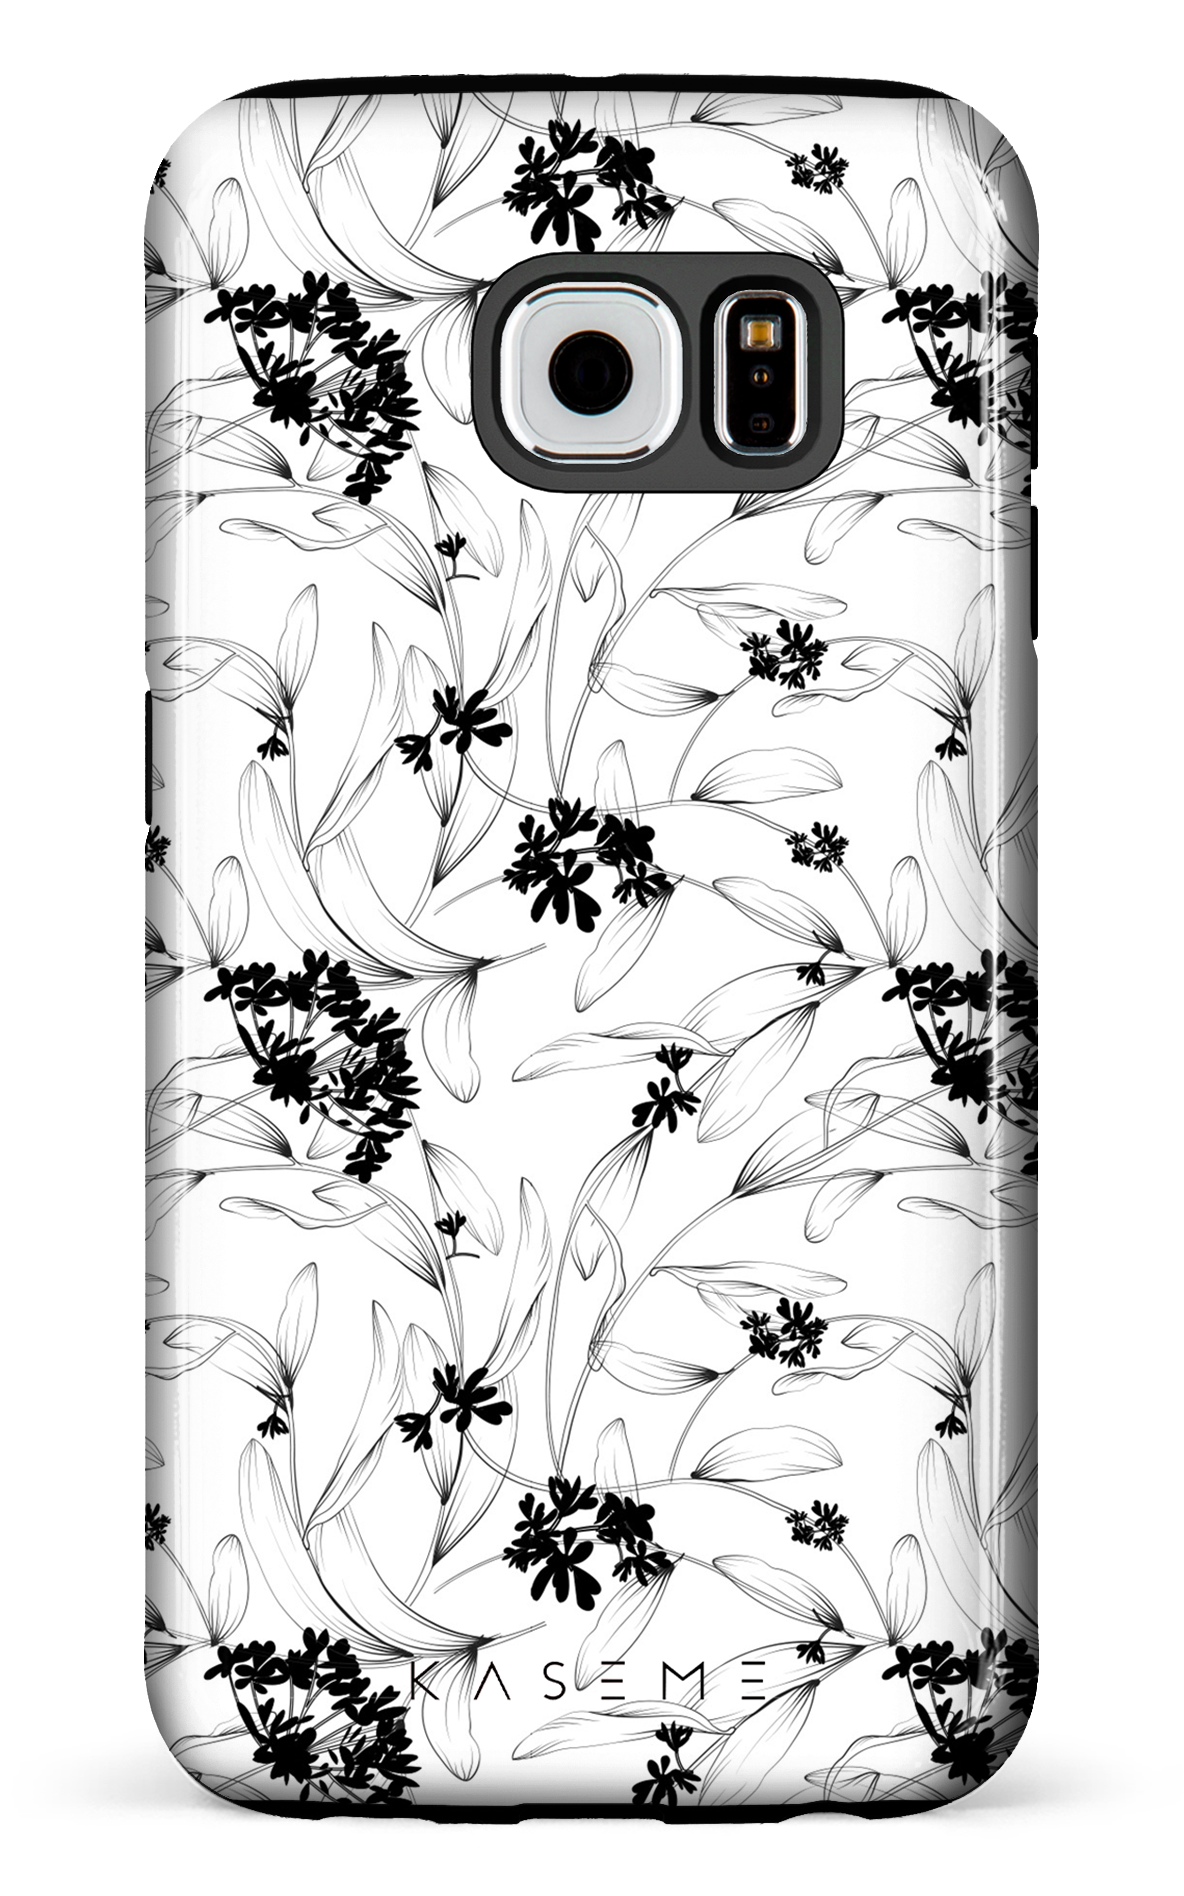 Cordelia - Galaxy S6